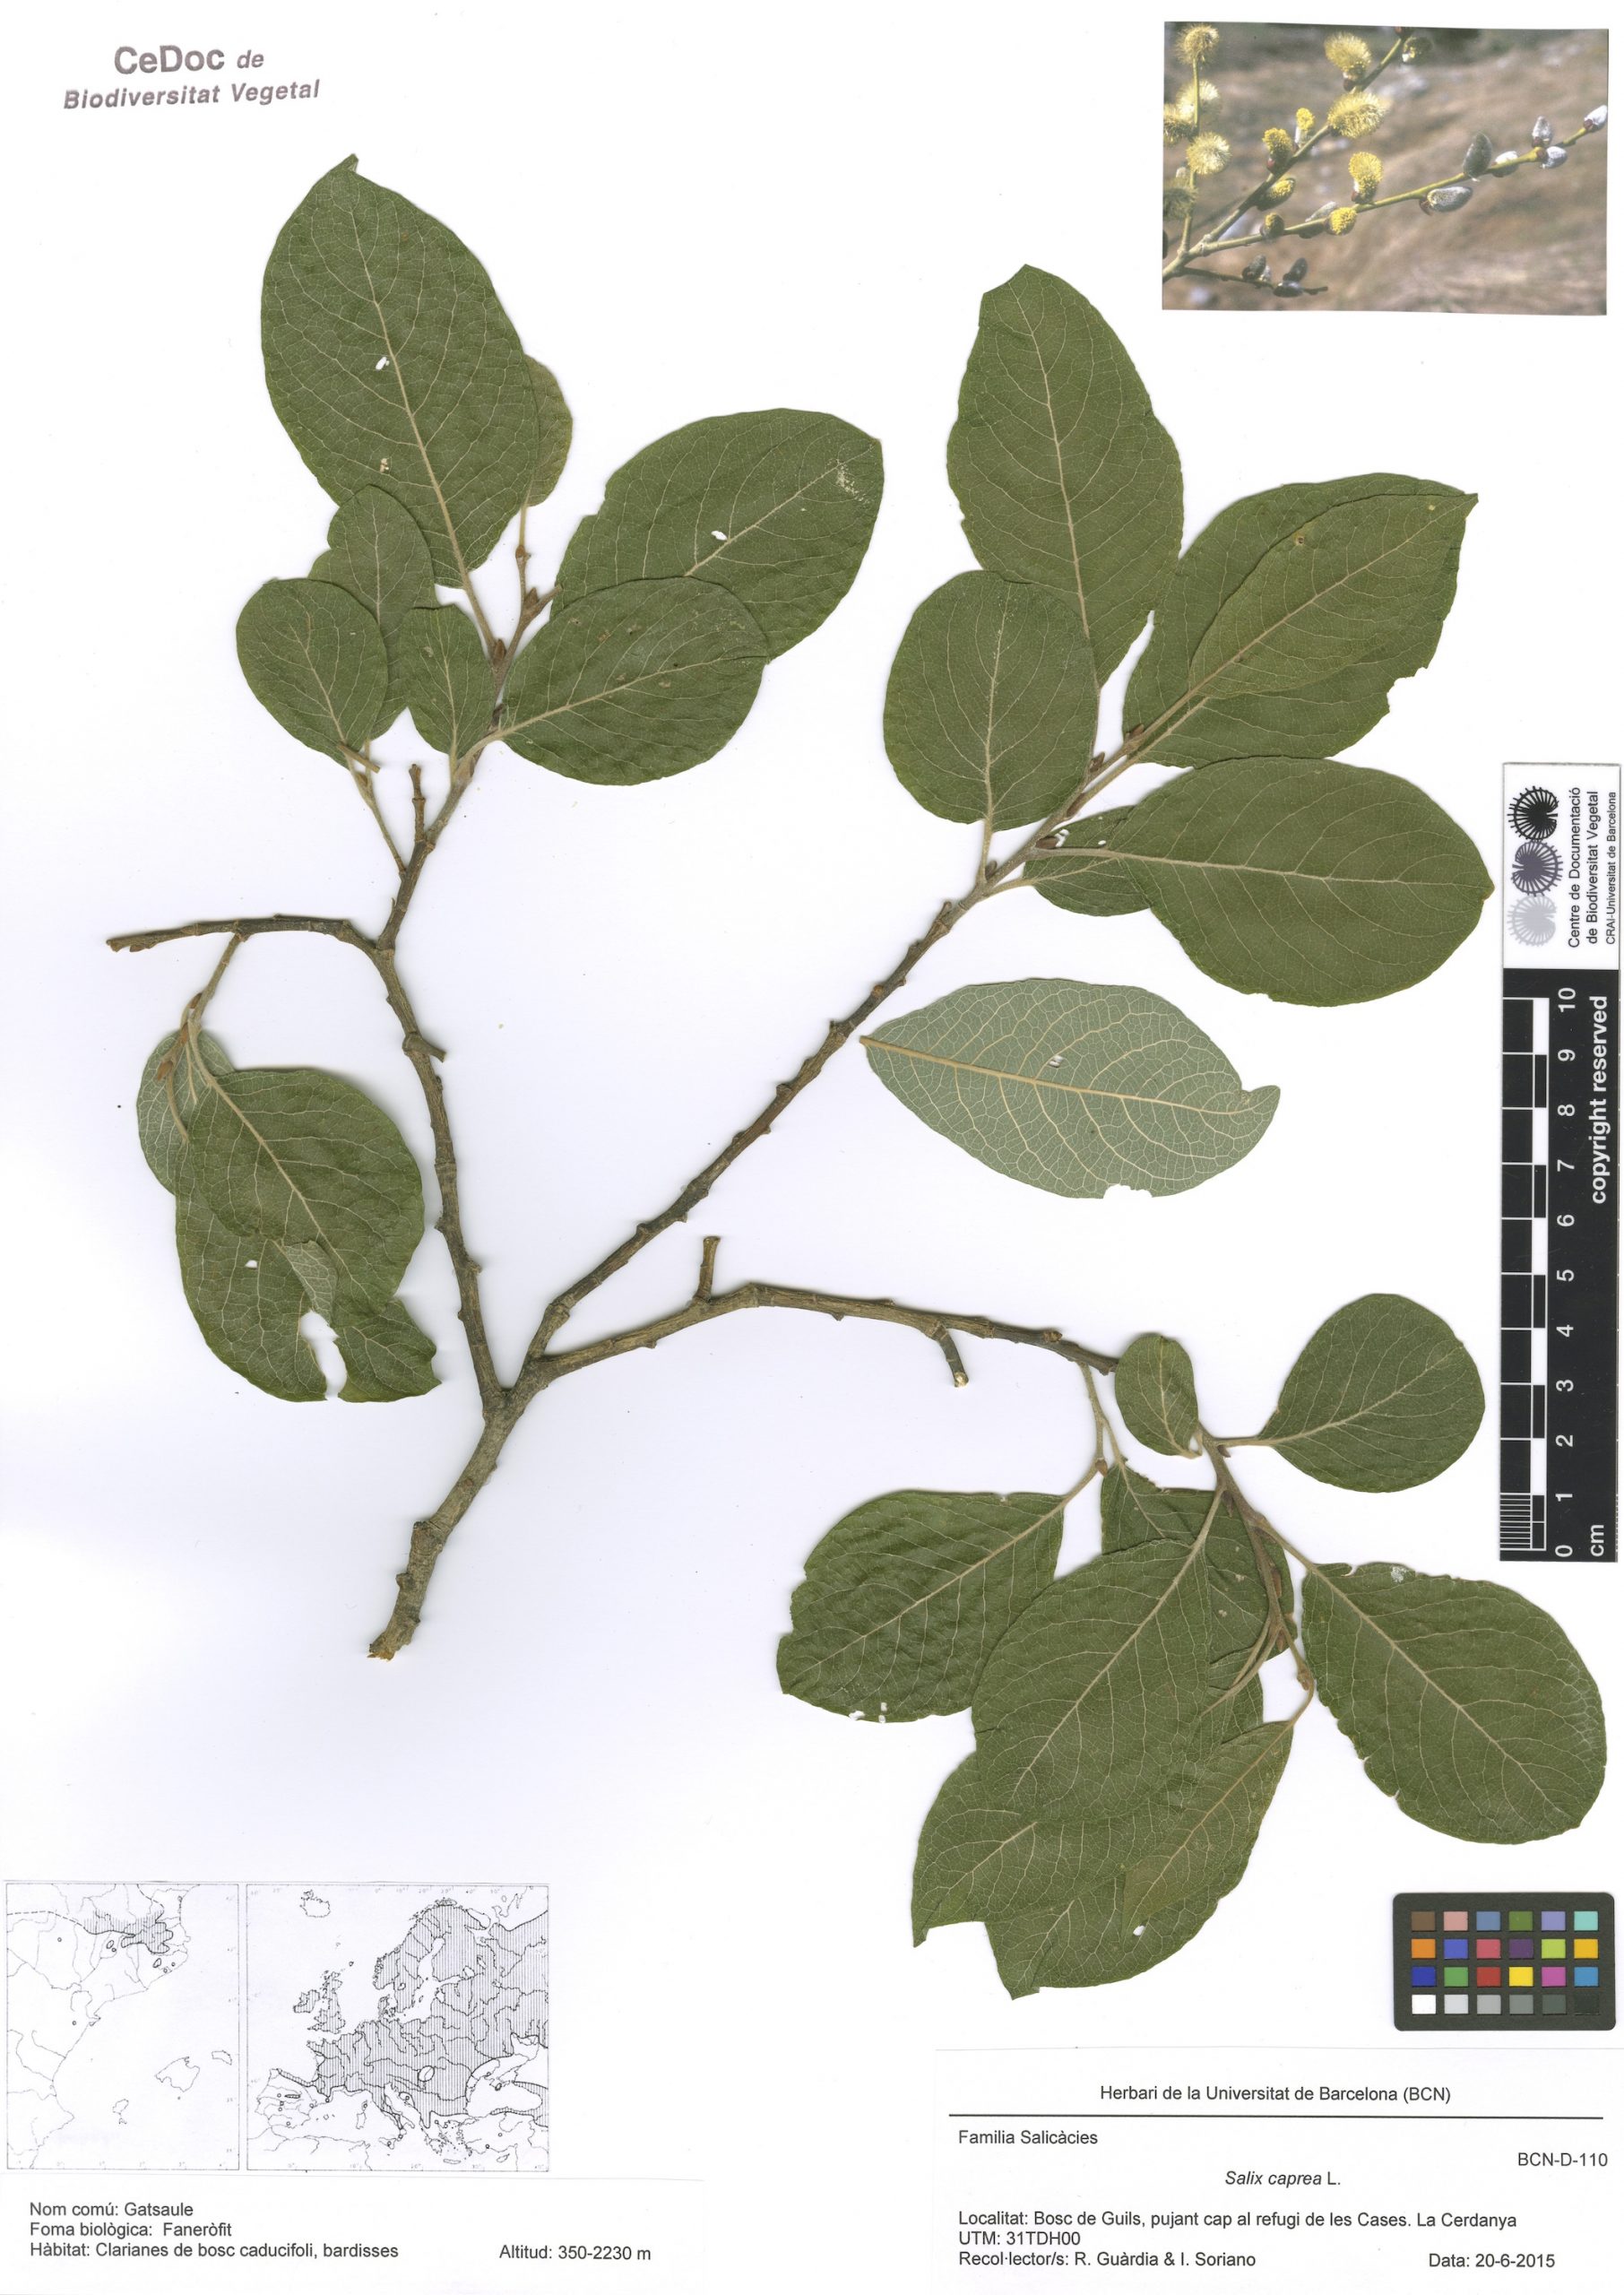 Salix caprea L. (Gatsaule)